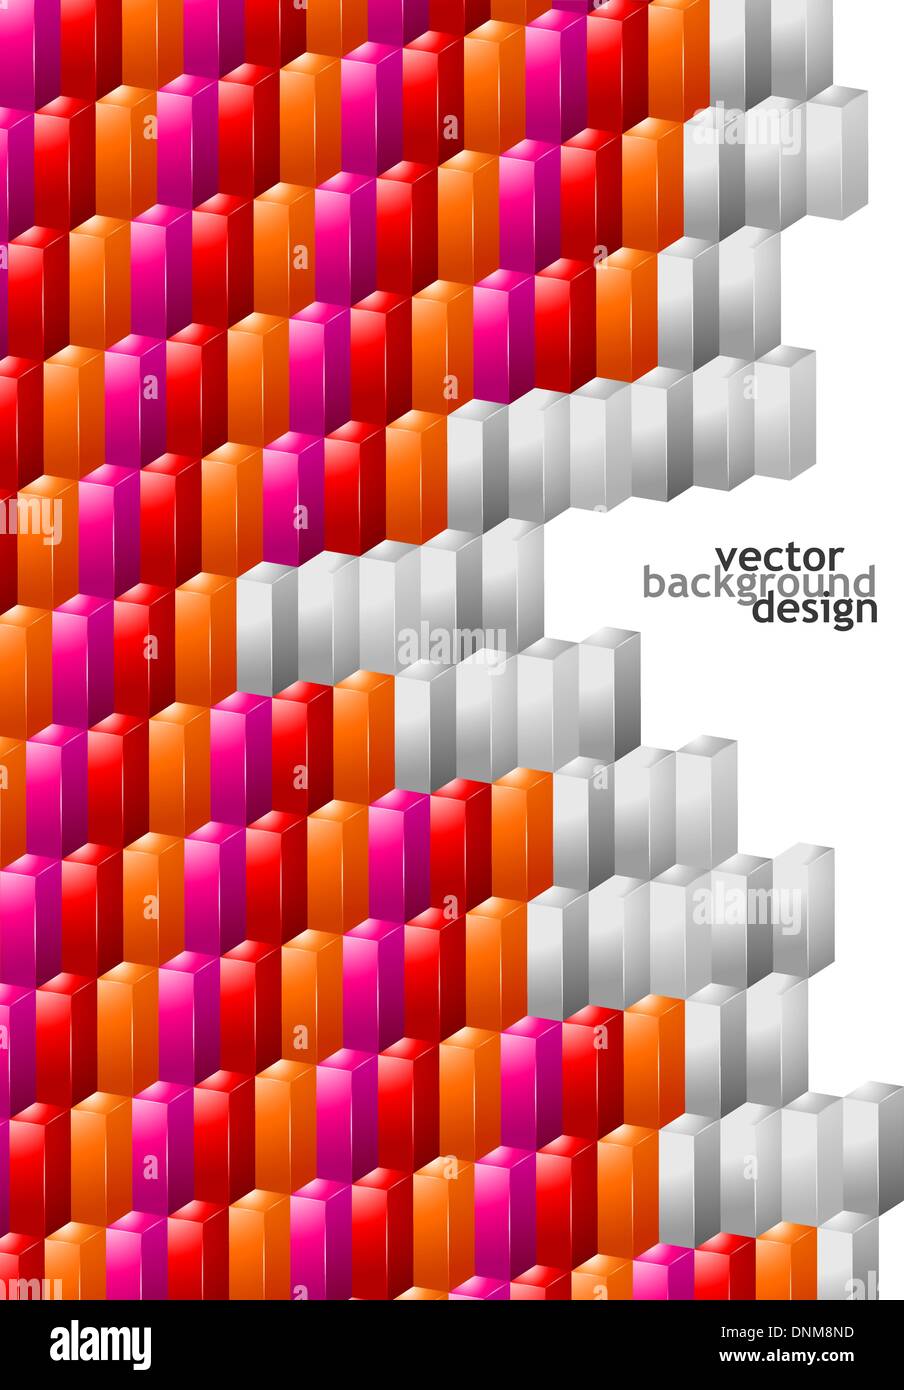 Vektor-Illustration von abstrakten Hintergrunddesign für Poster, Cover, Layout oder Dekoration Stock Vektor